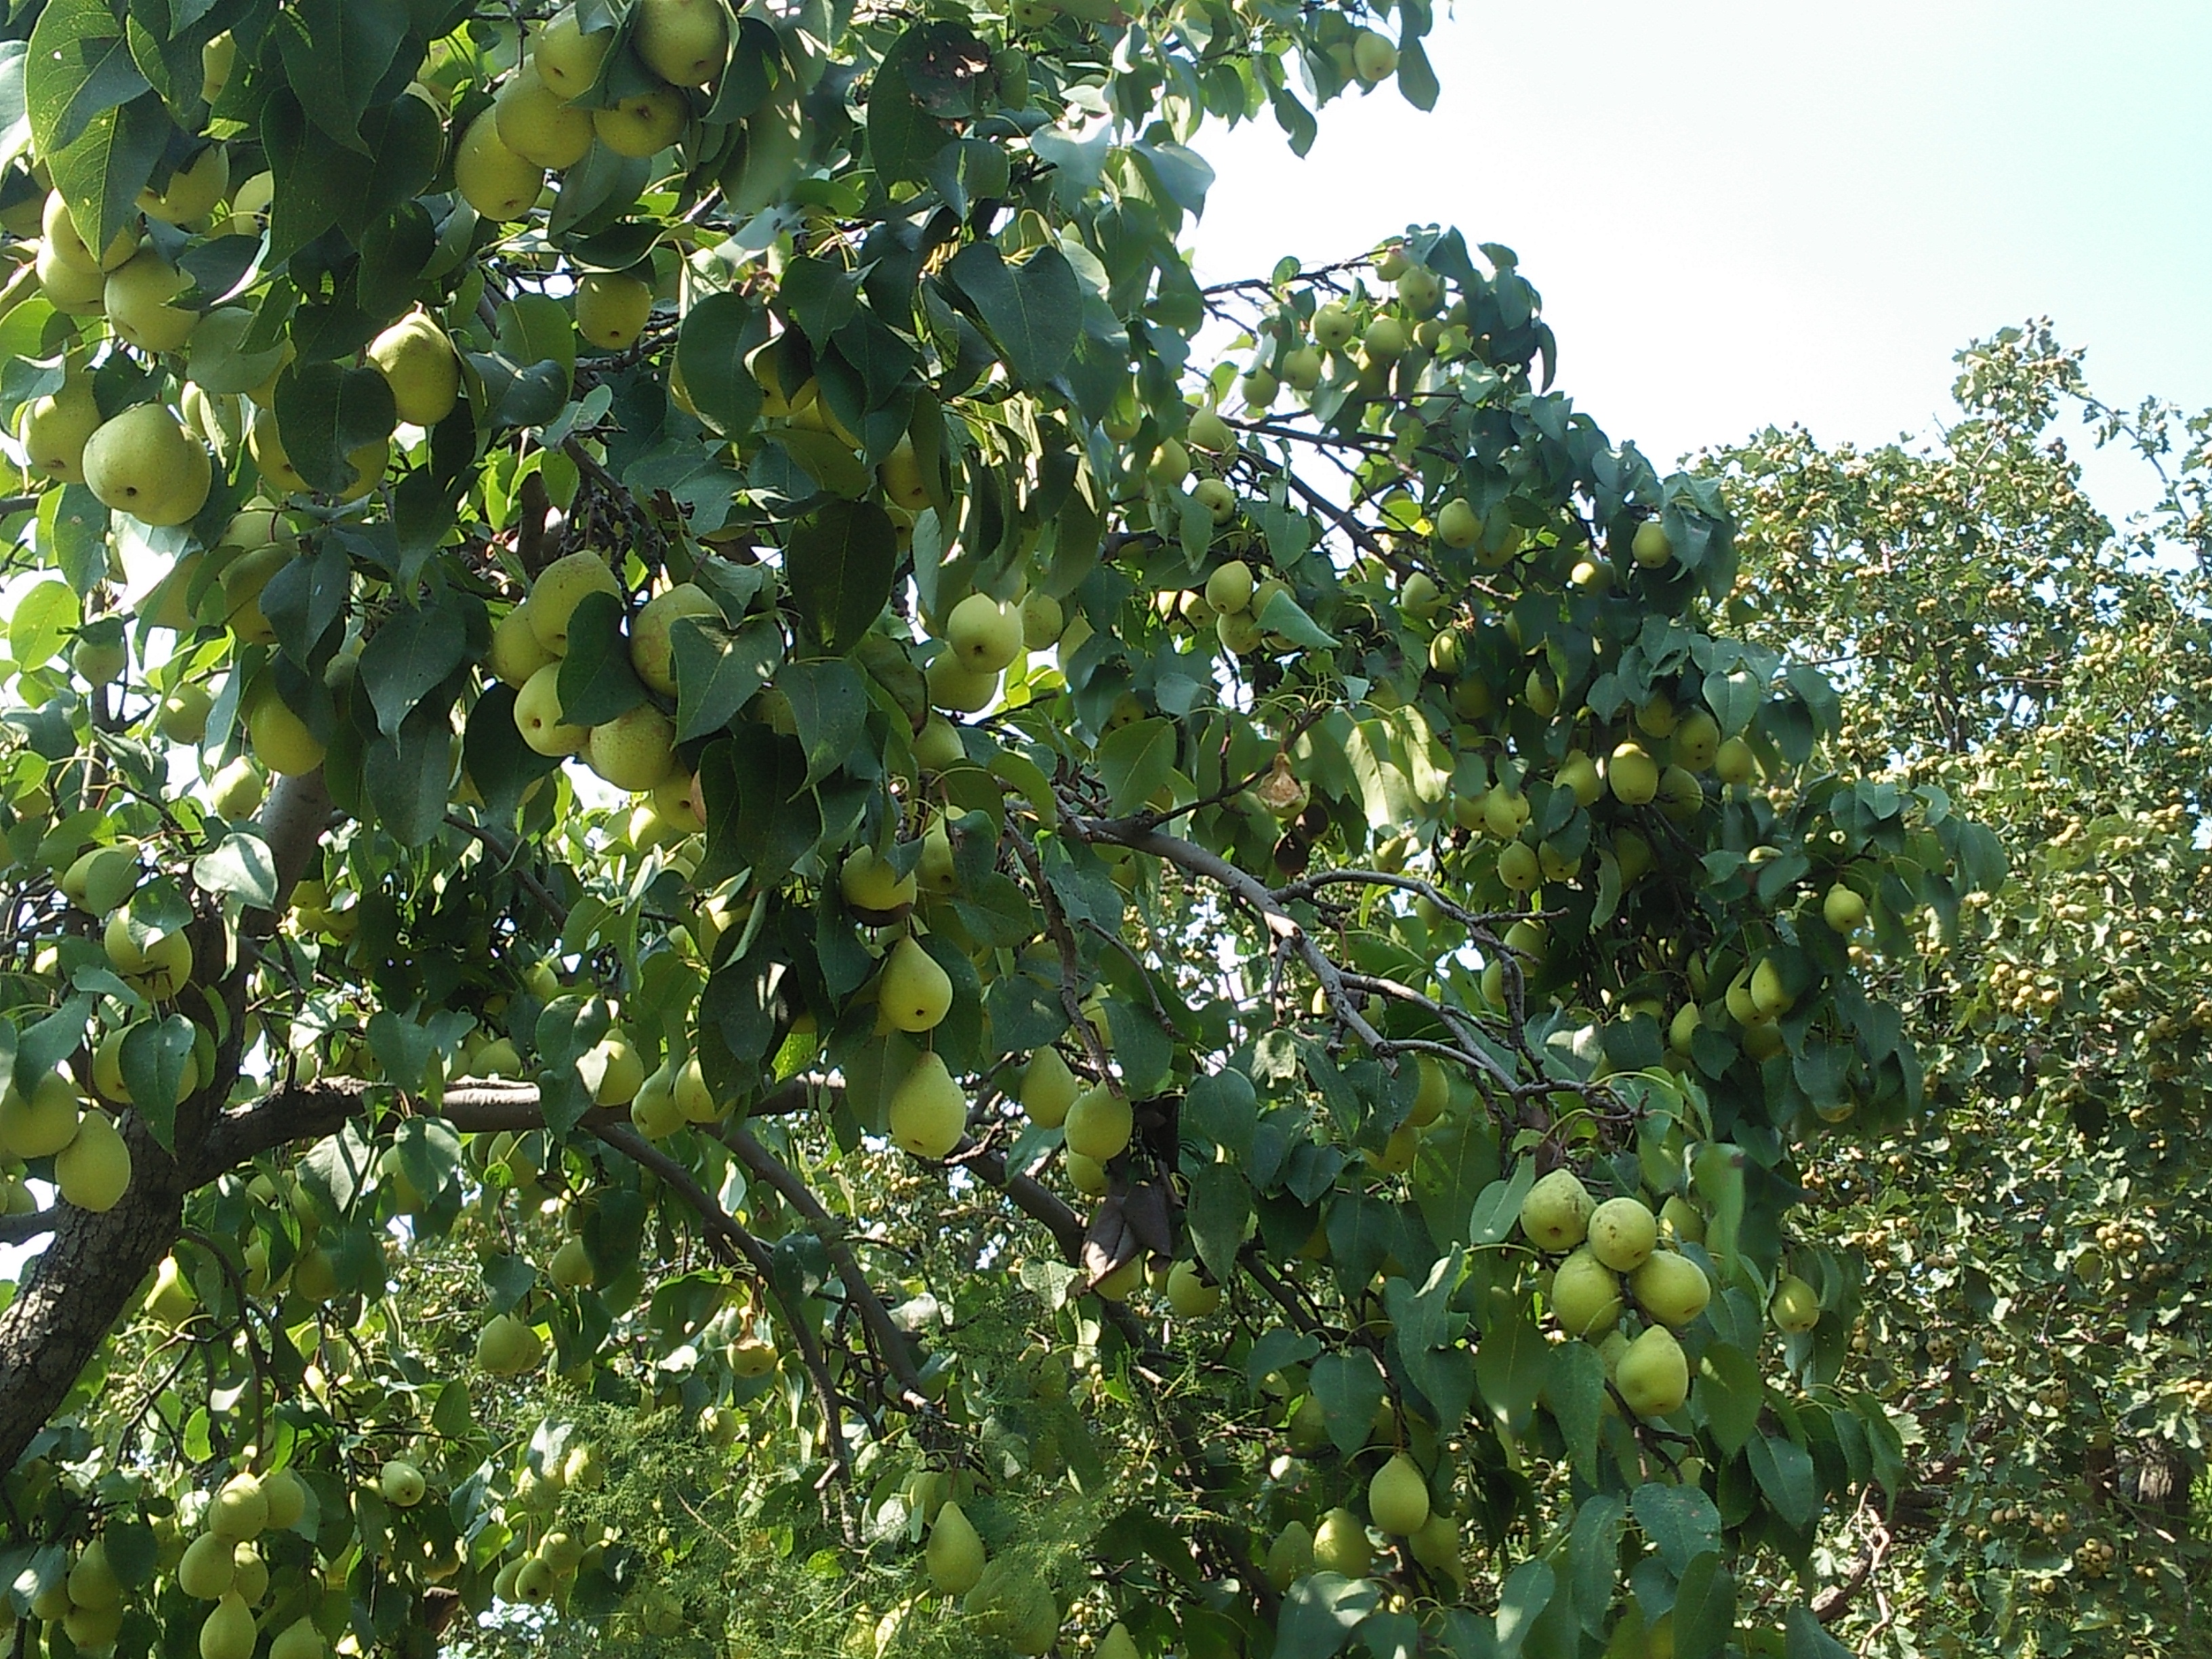 实拍:农村老汉自家果园种了7年的梨树,一棵树结了800个梨子!